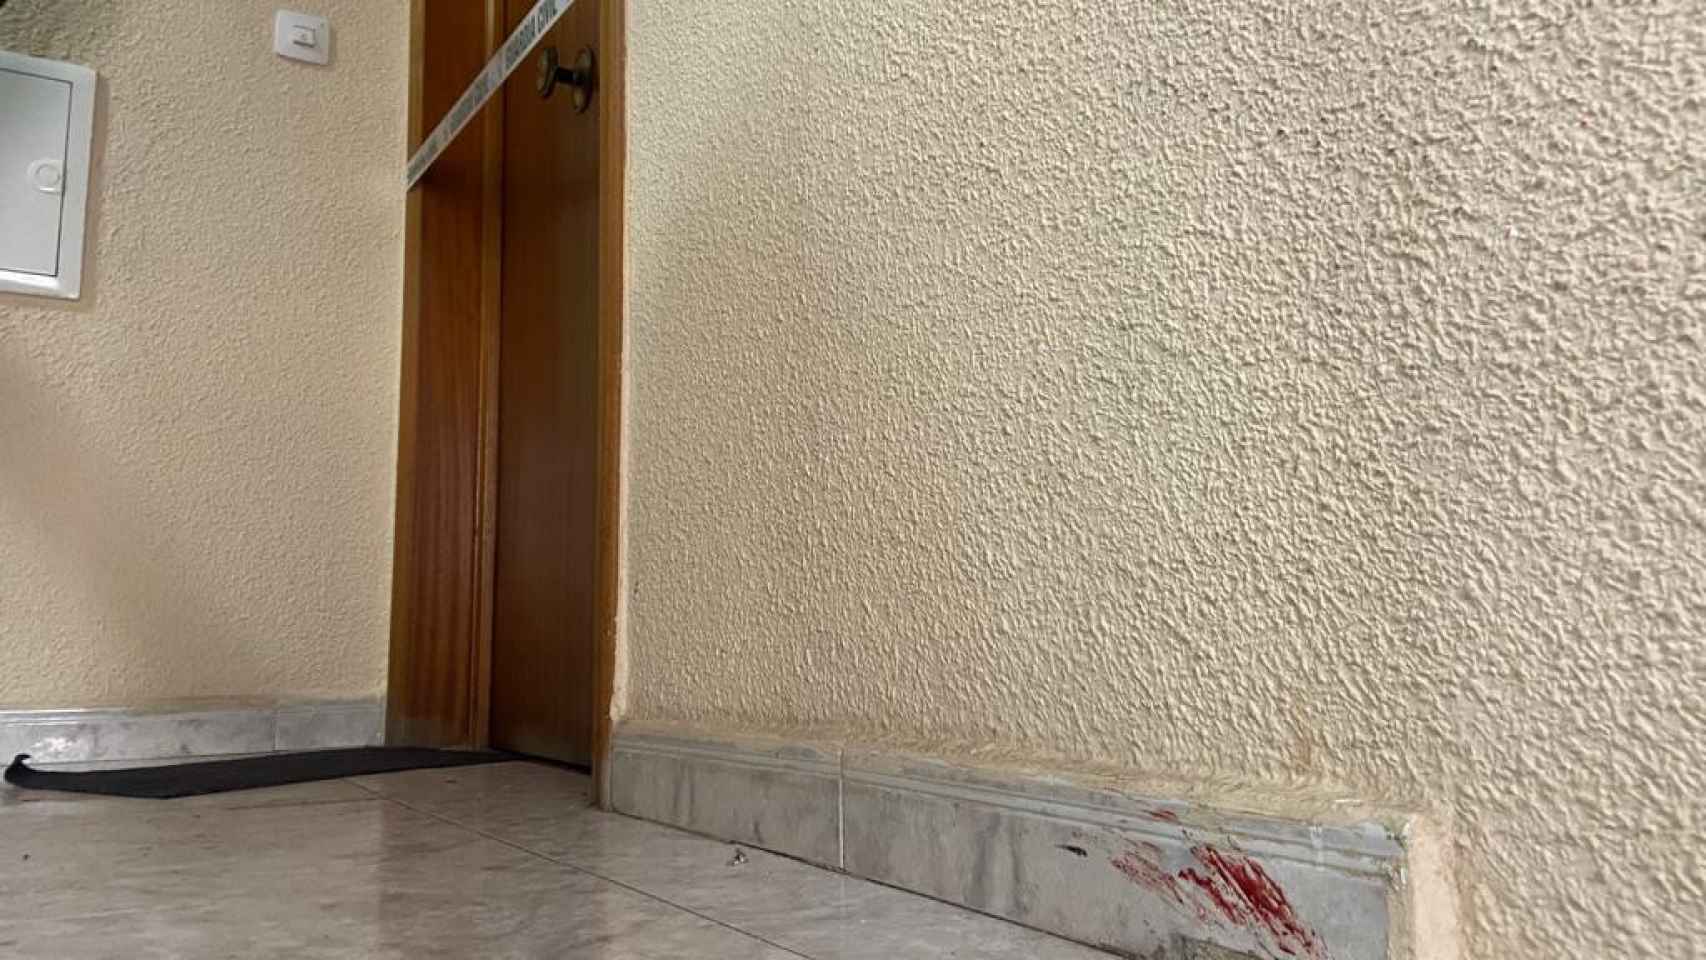 La puerta de la casa en la que tuvo lugar el crimen con rastros de sangre.